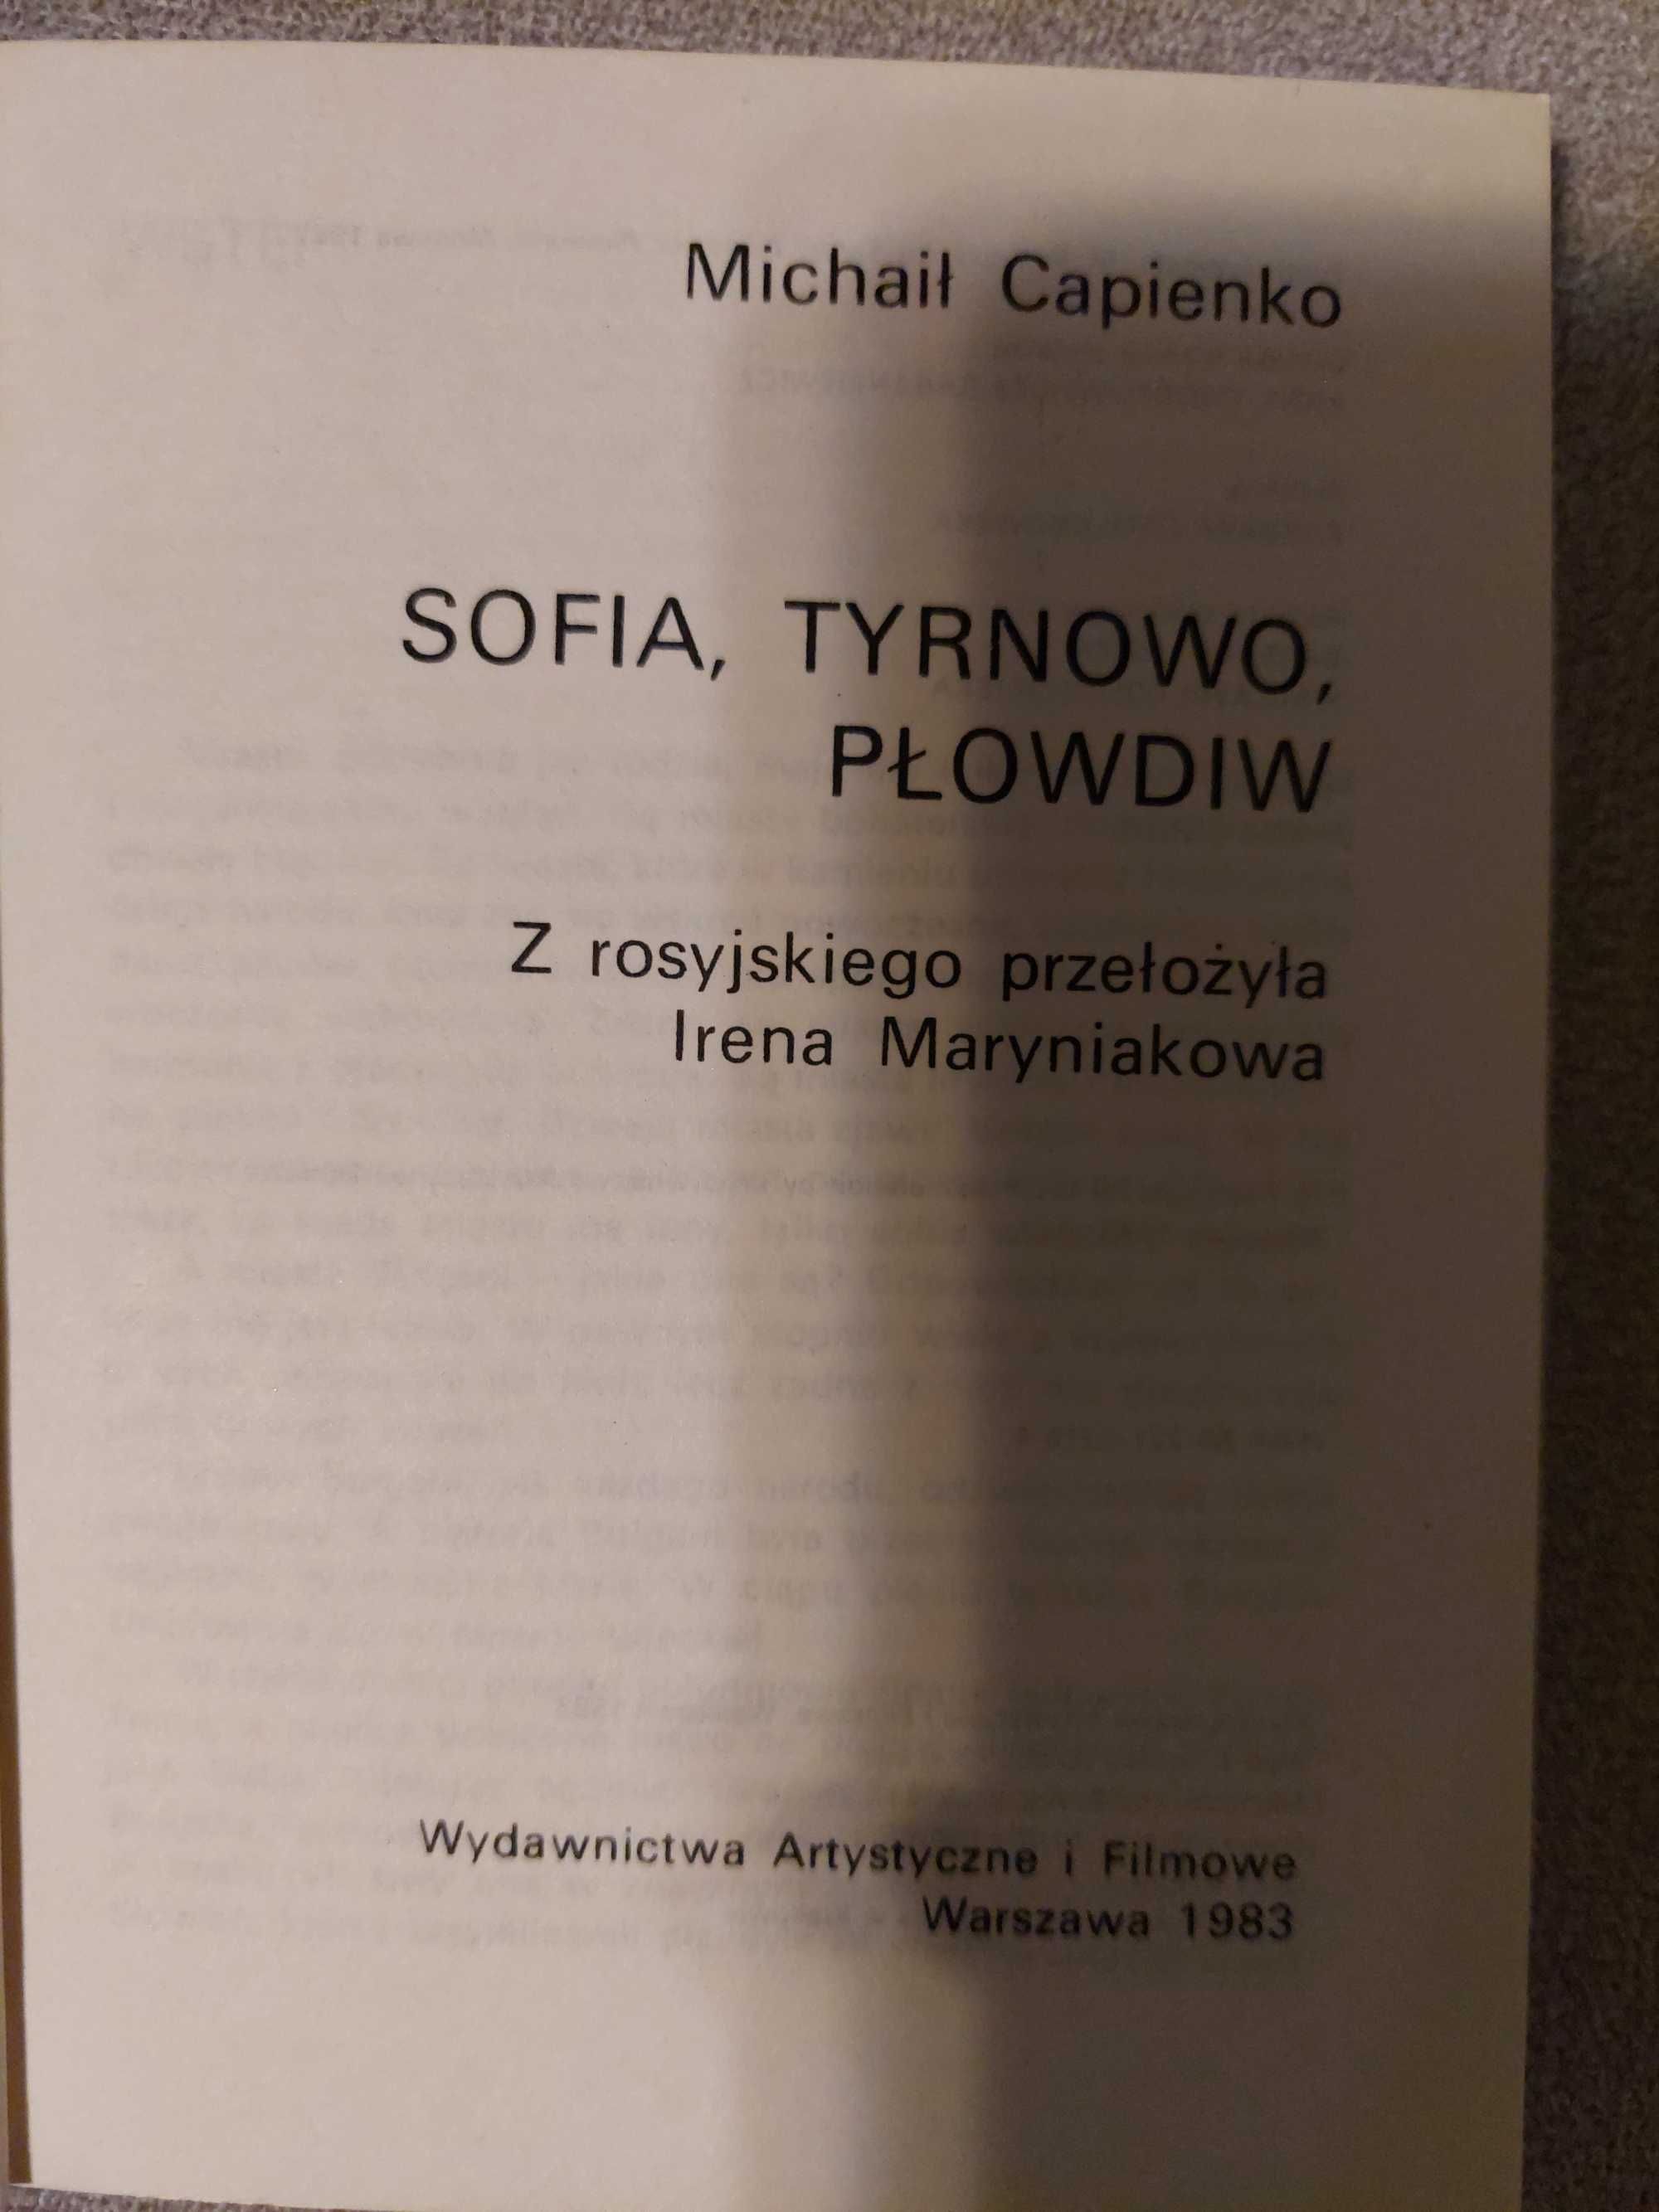 Sofia, Tyrnowo, Płodwiw z serii artystyczne stolice świata